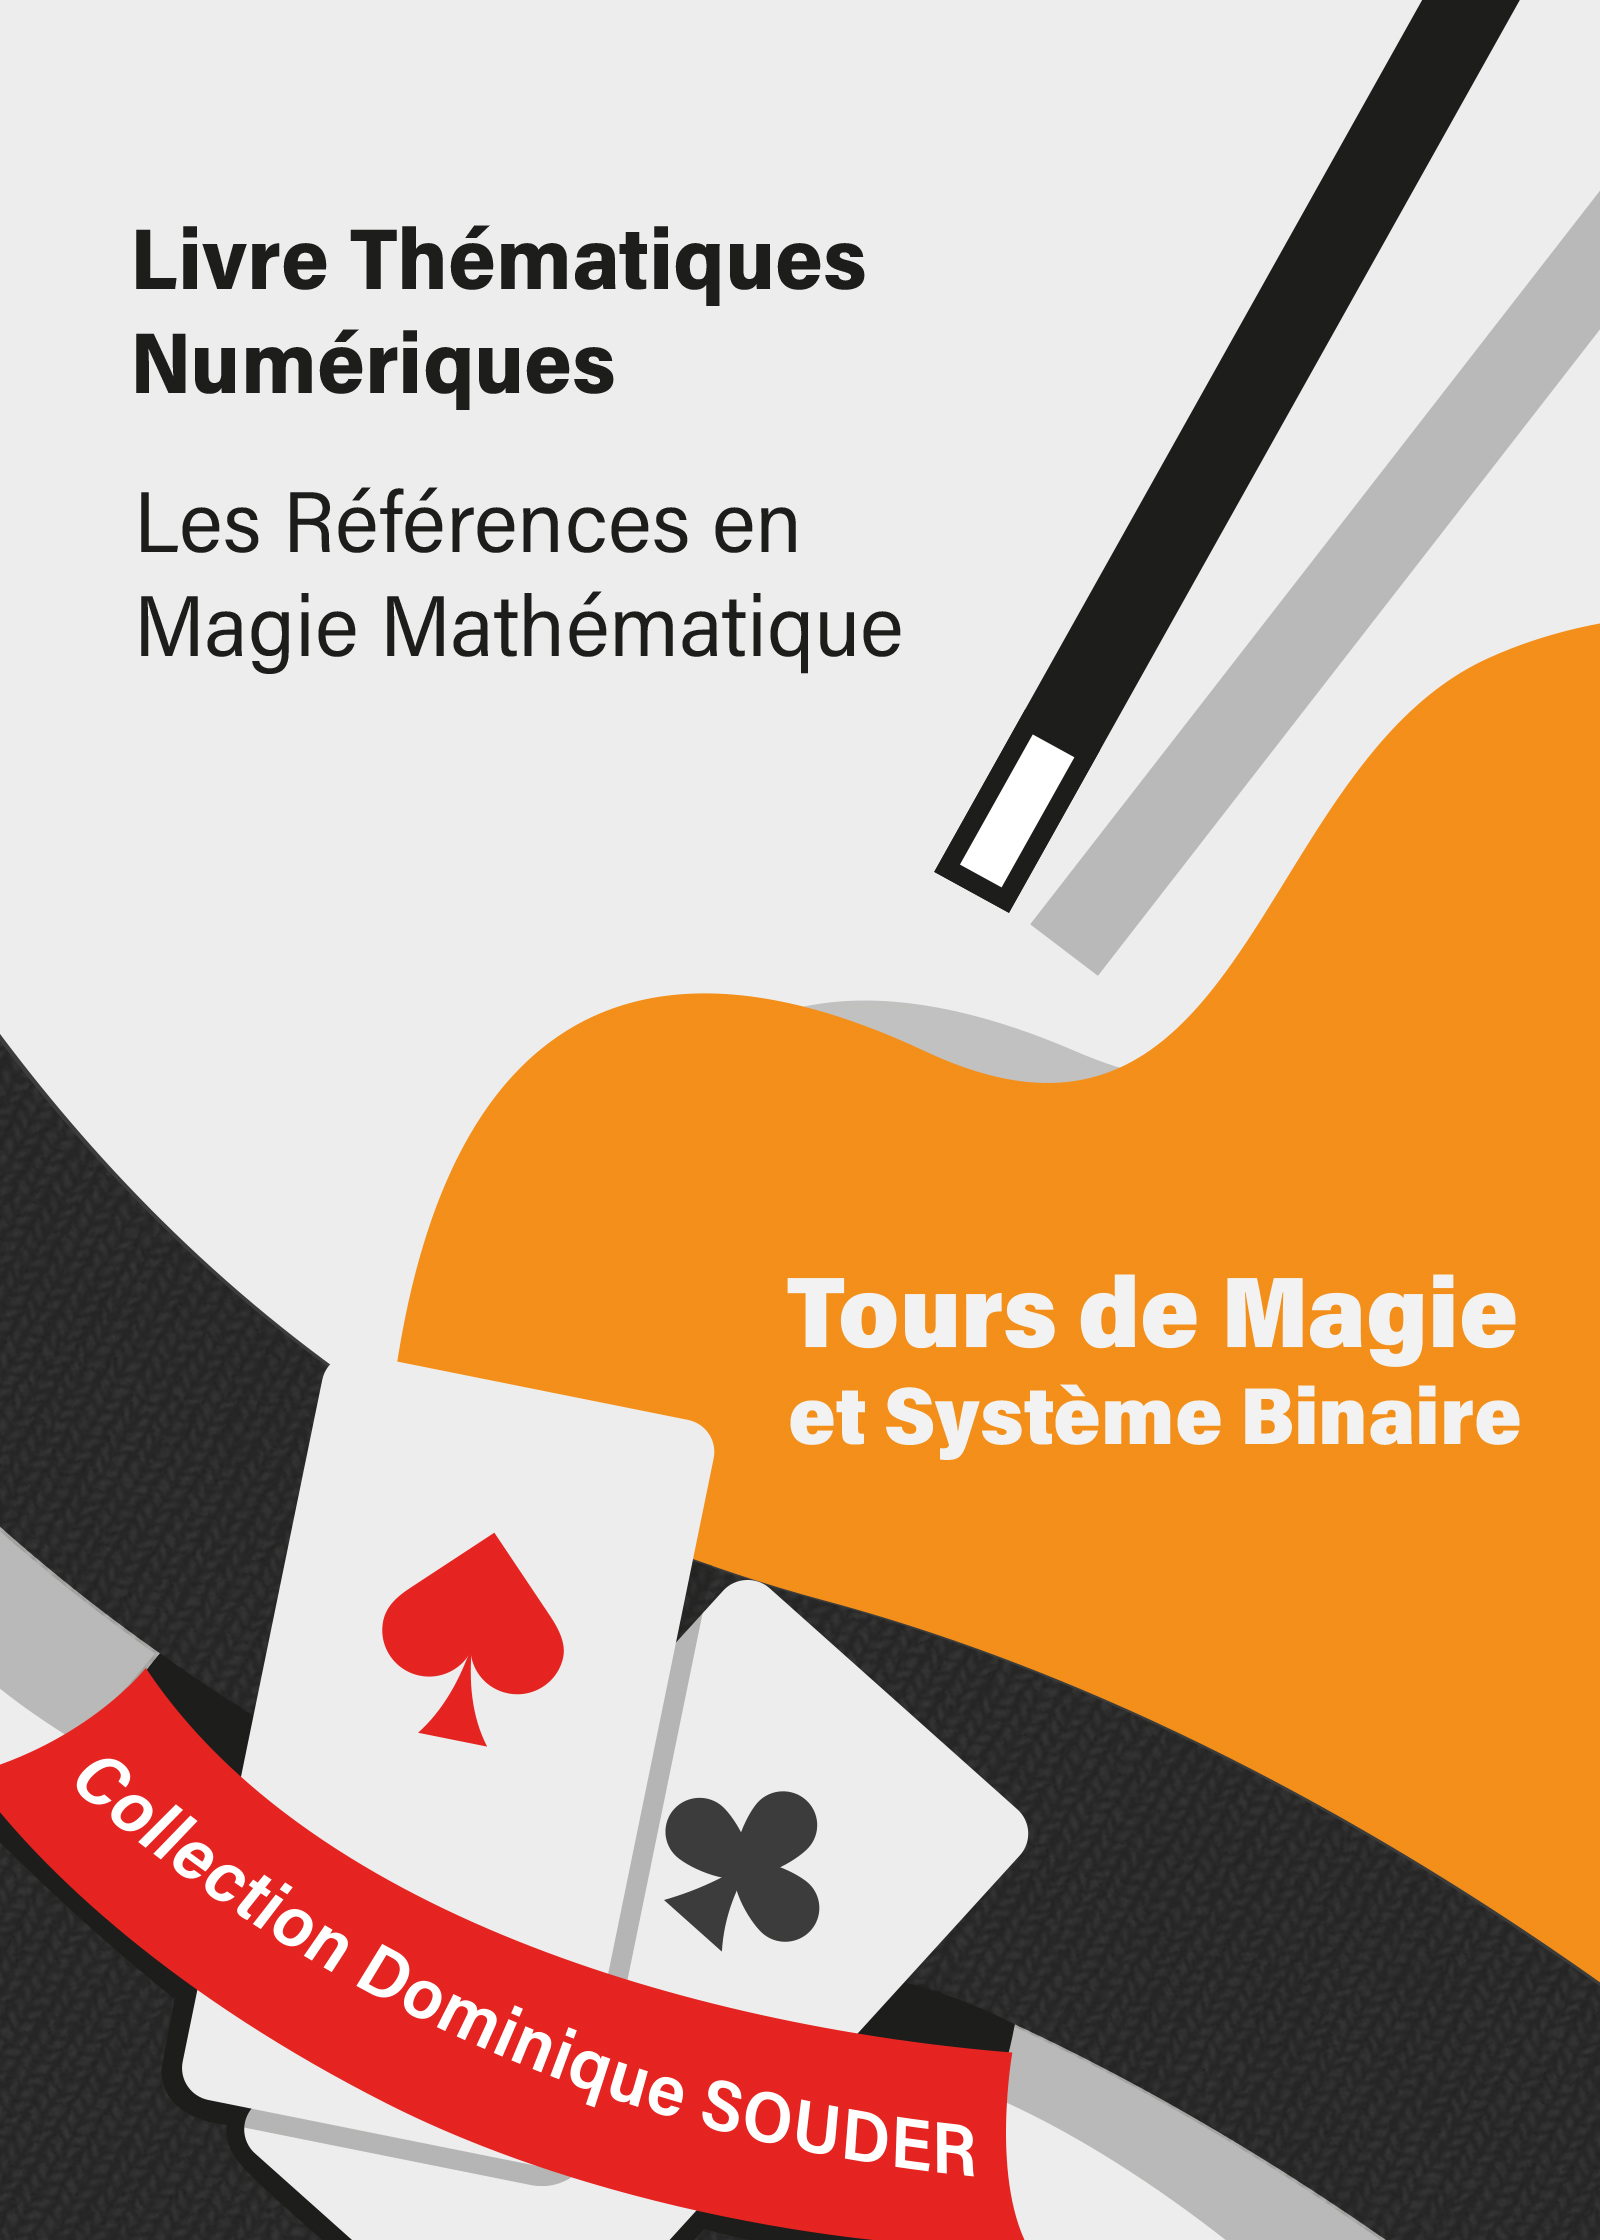 Tour de magie : La magie binaire  Tour de magie, Magie carte, Tour de magie  expliqué